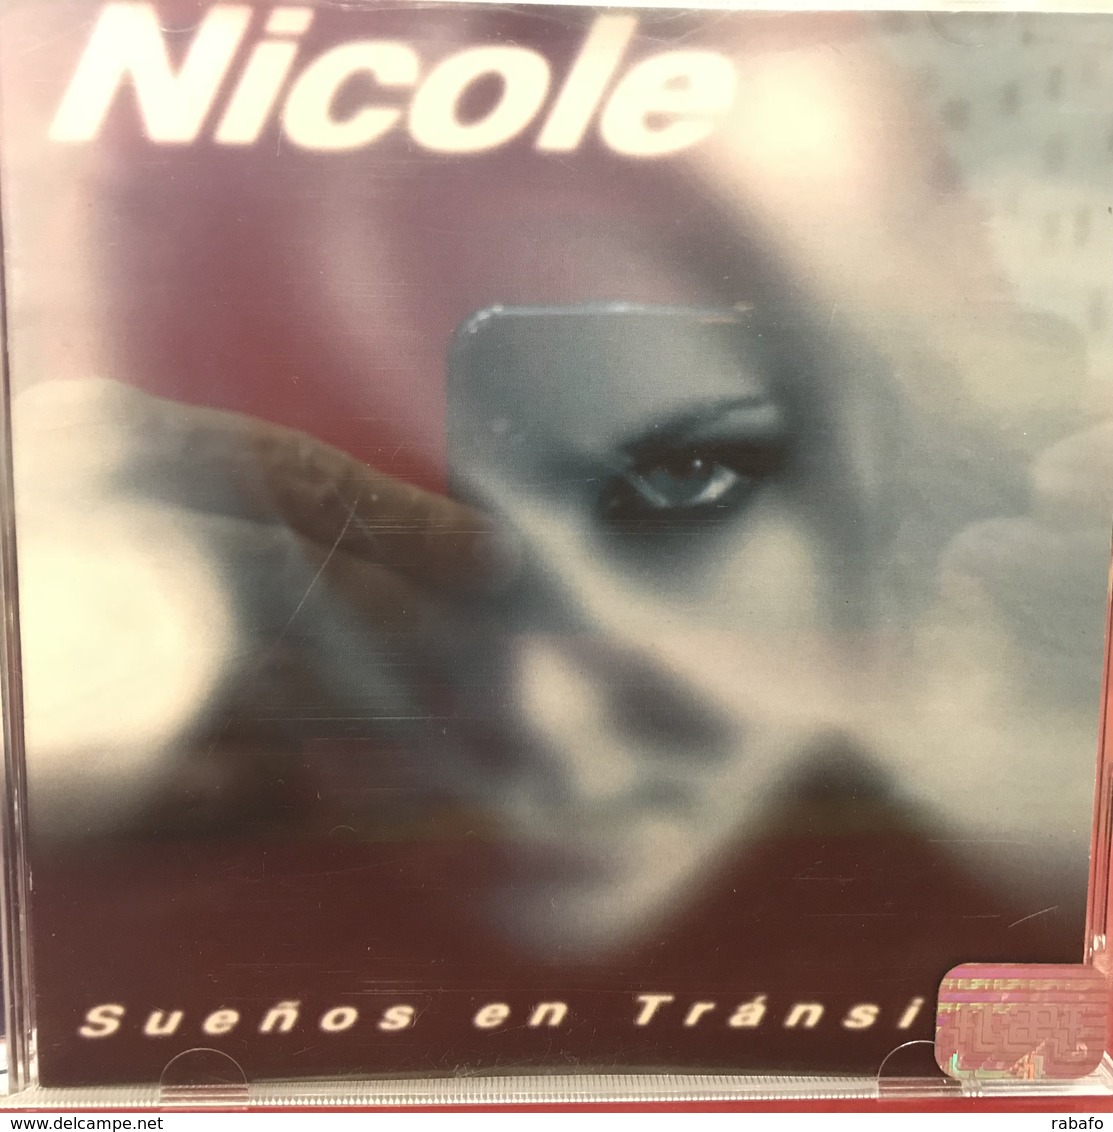 CD Argentino De Nicole Año 1997 - Dance, Techno & House